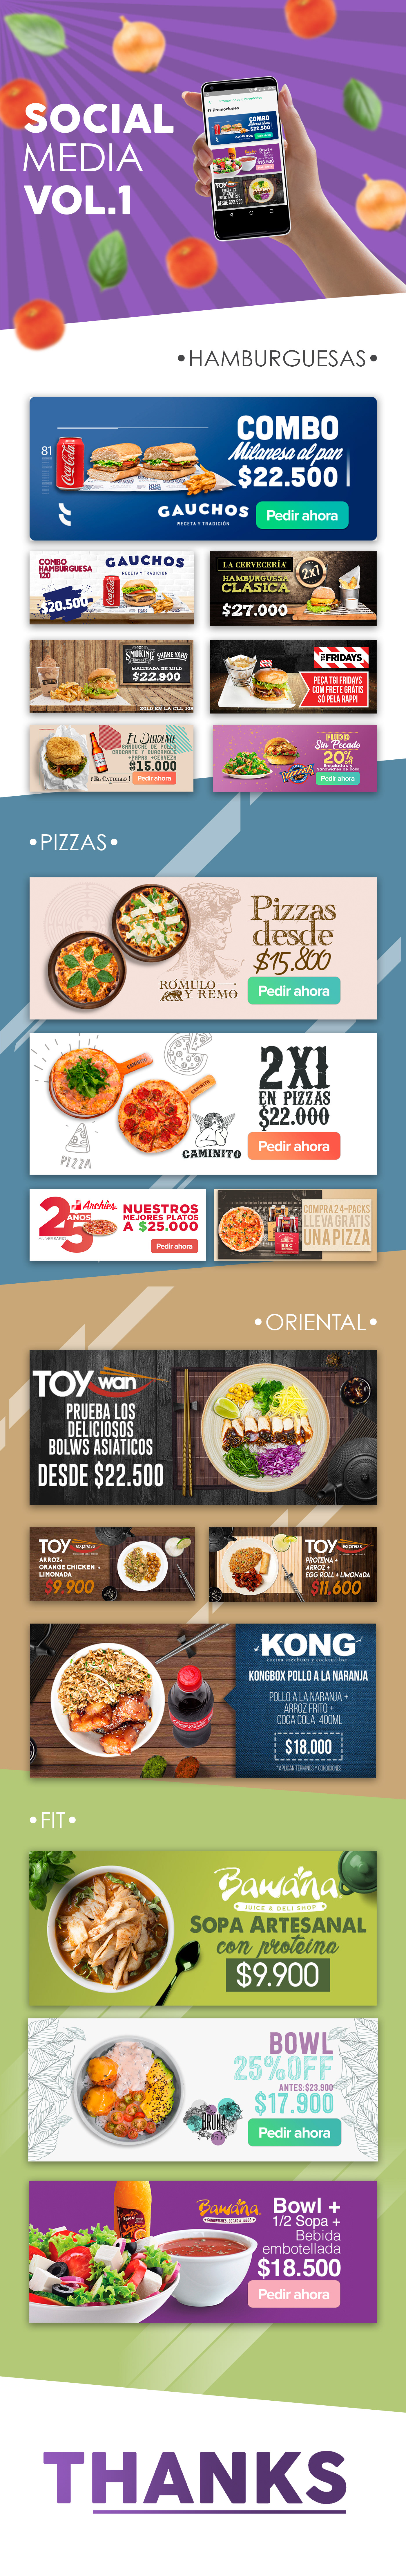 banner digital social media restaurant Food  burger Sushi Pizza app